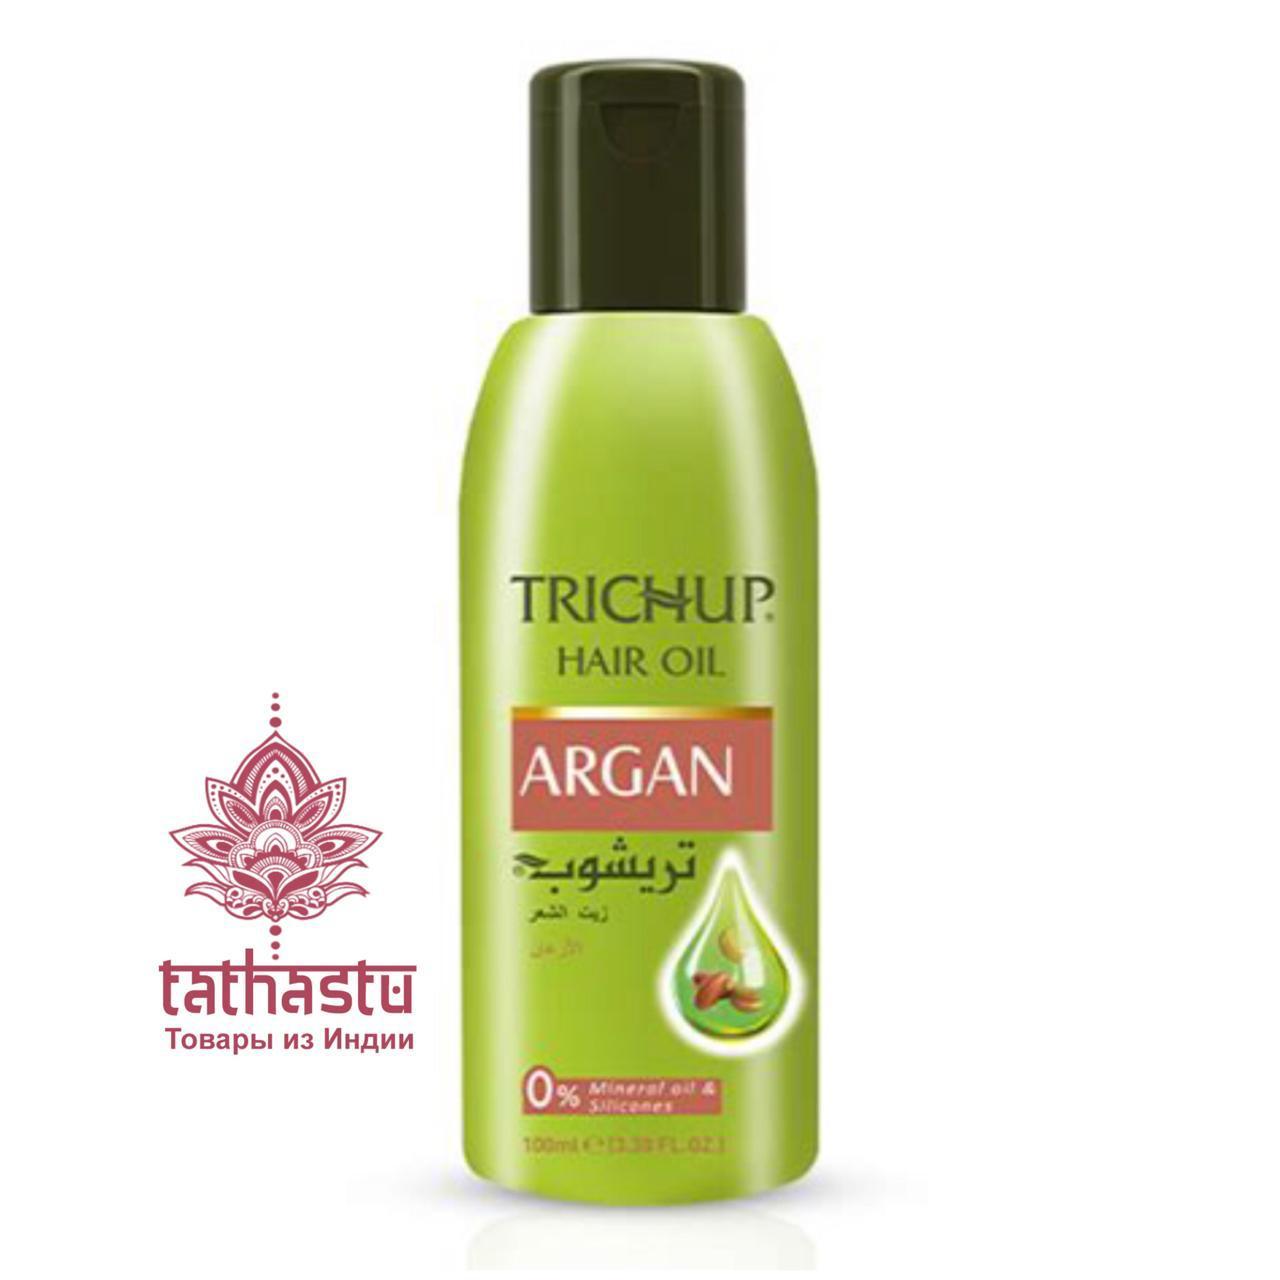 Аргановое масло для волос Тричап - Trichup Argan Hair Oil. Tathastu товары и индии